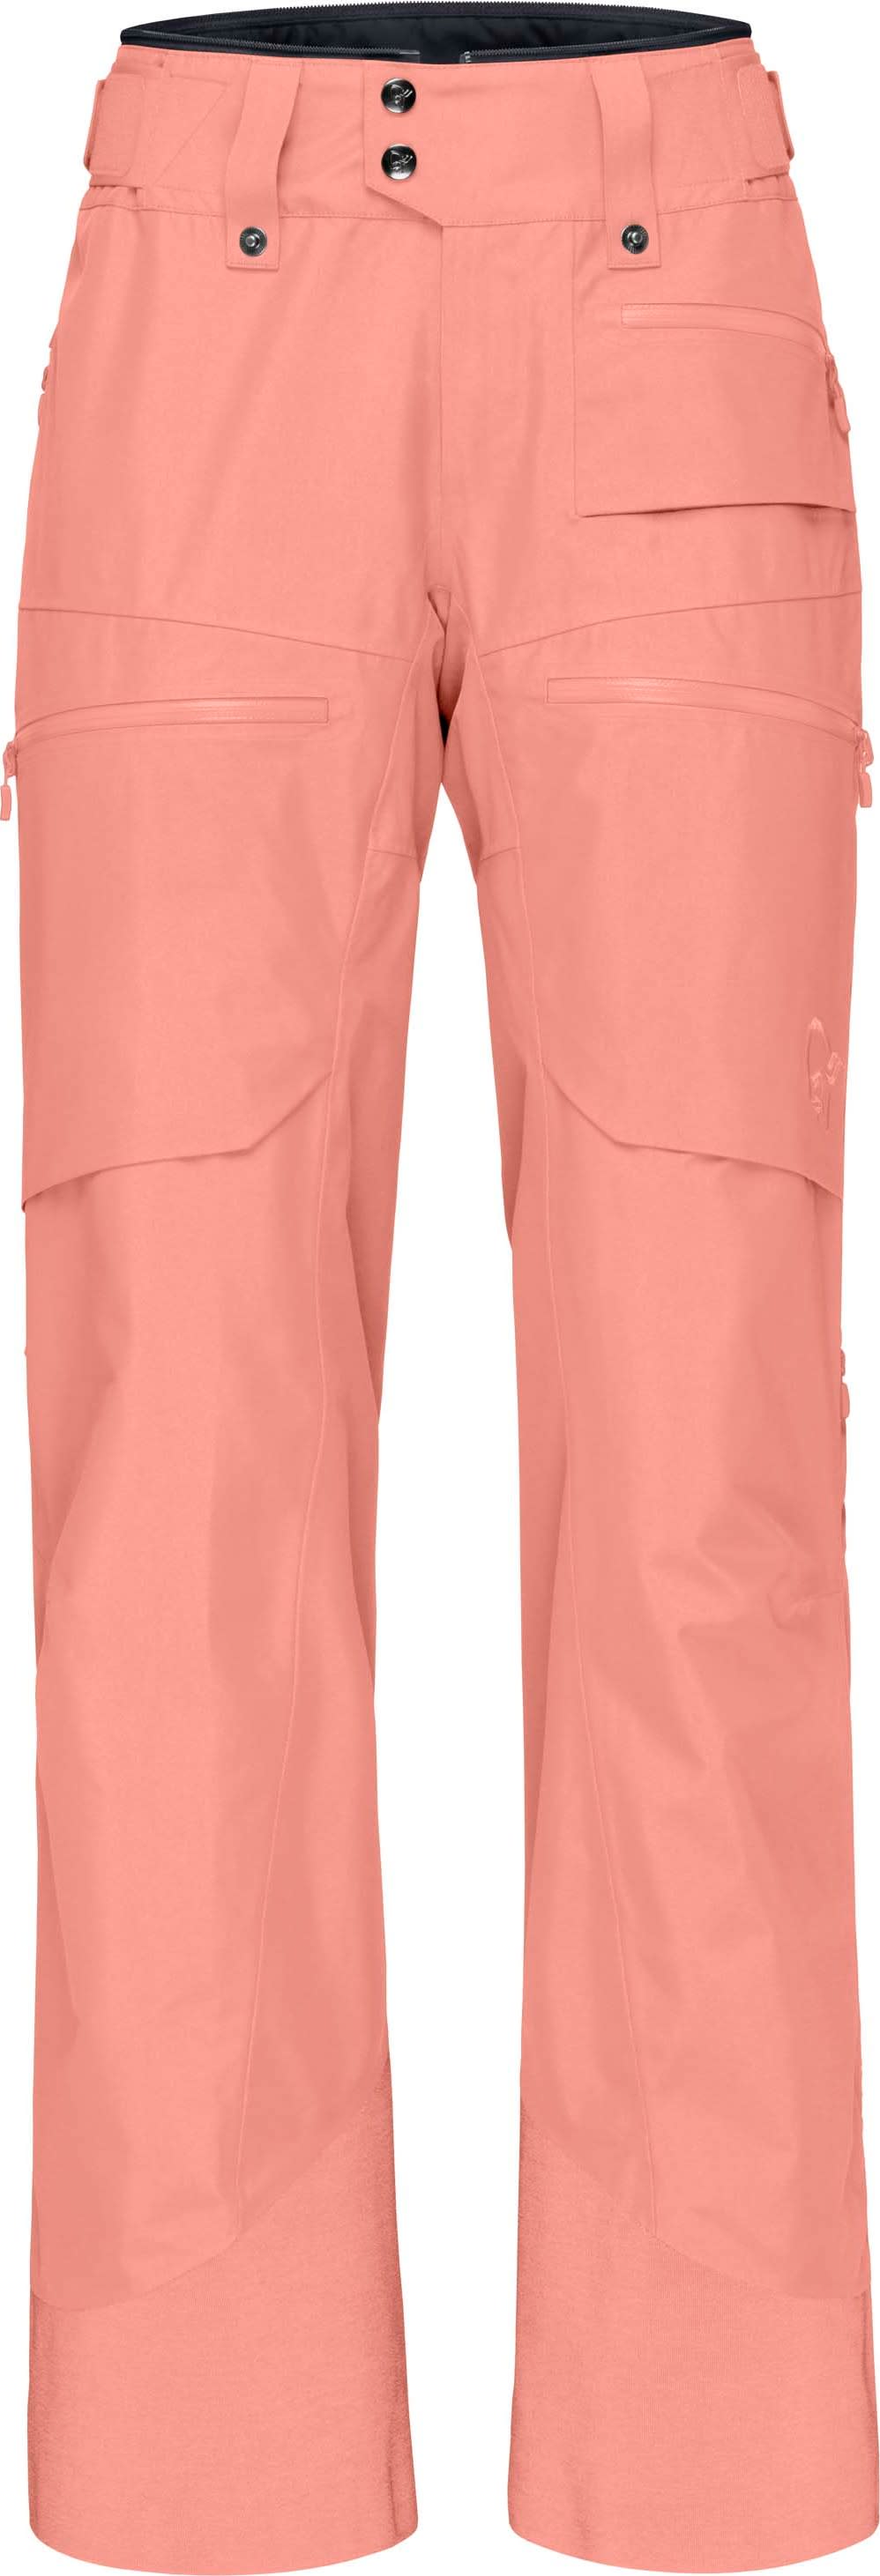 Women’s Lofoten GORE-TEX Insulated Pants Peach Amber